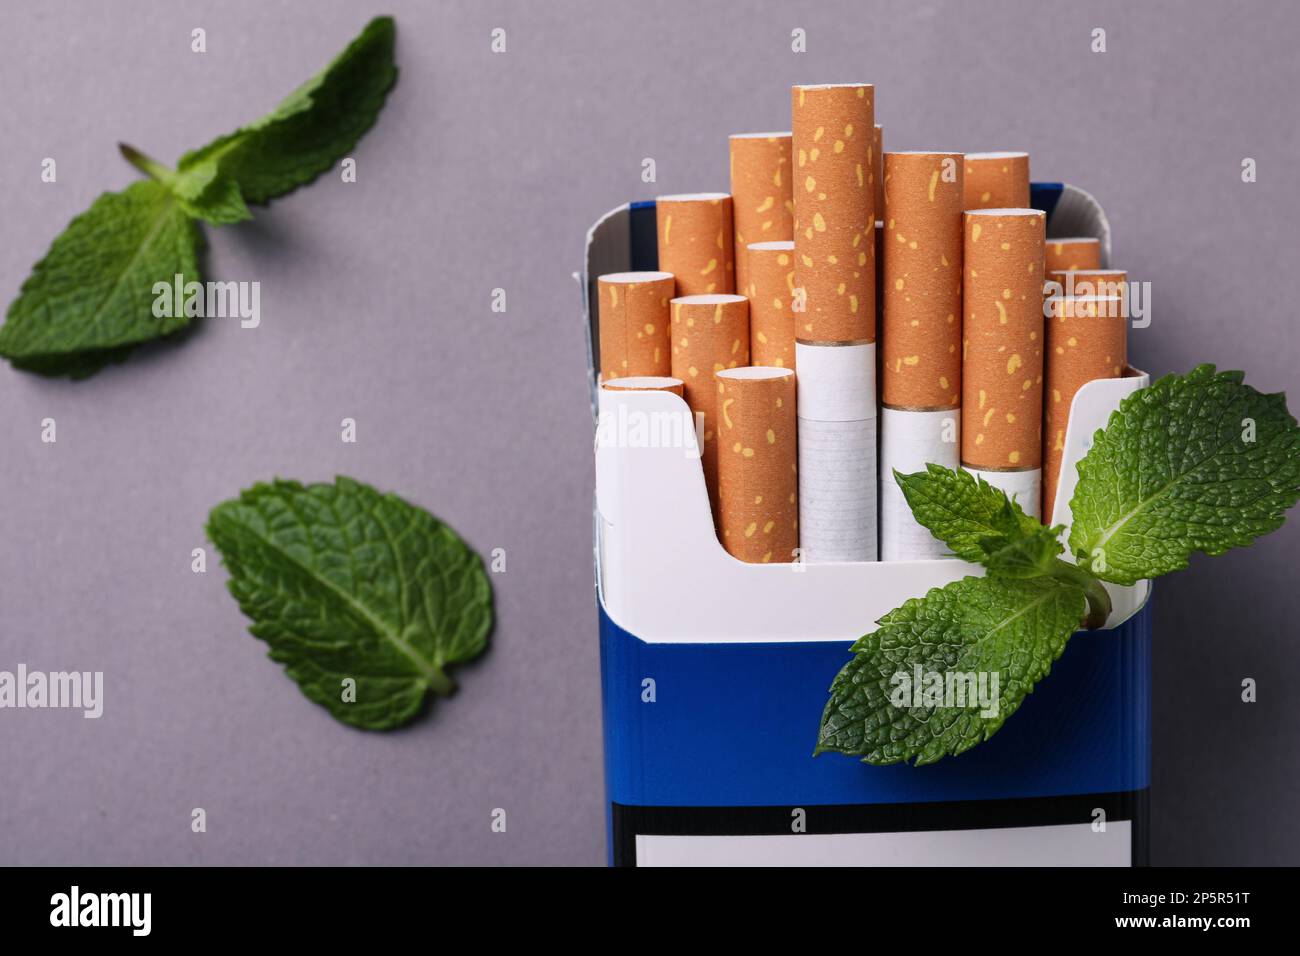 Paquet de cigarettes de menthol et feuilles de menthe sur fond gris, plat Banque D'Images